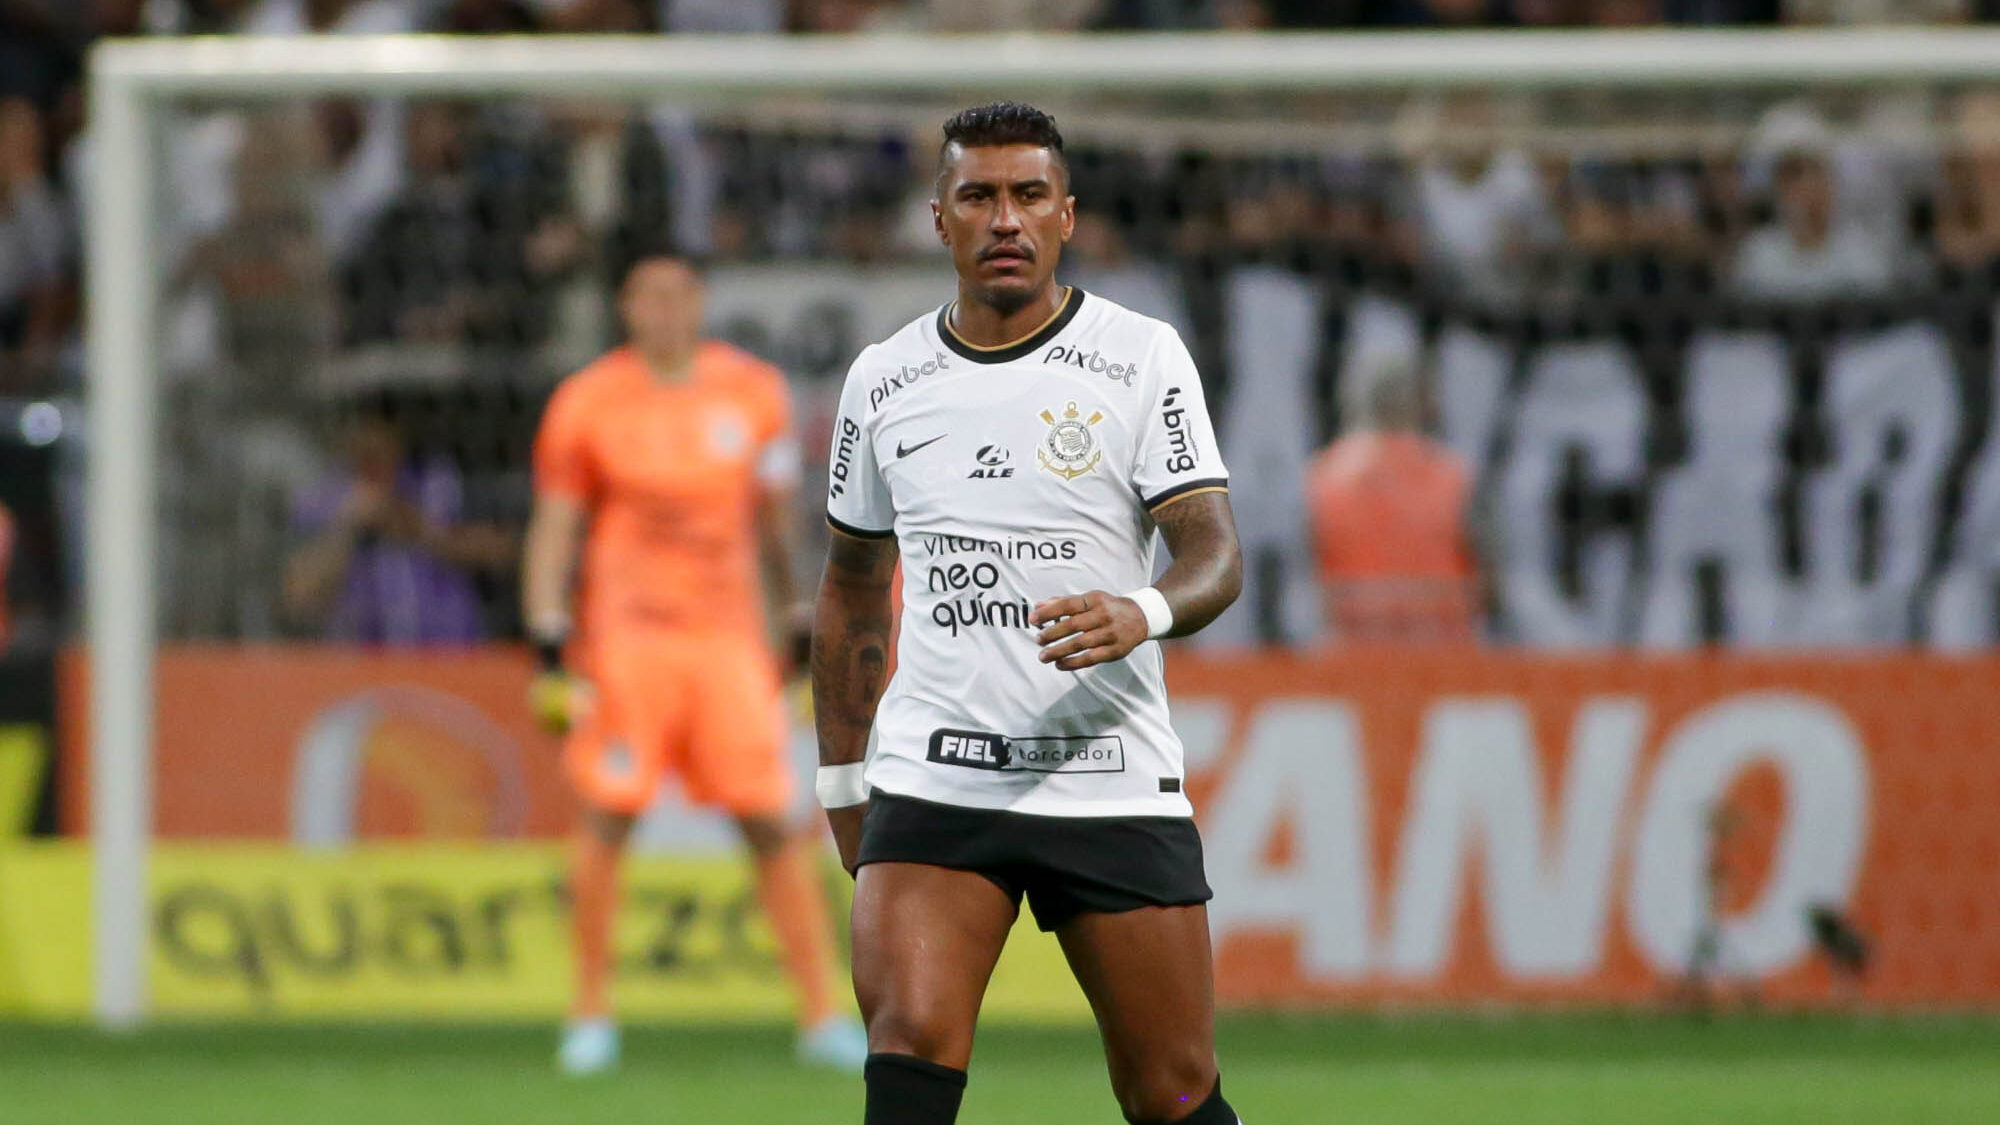 TEMPORADAS GOLEADORAS do Corinthians (100 ou + gols marcados): 2015